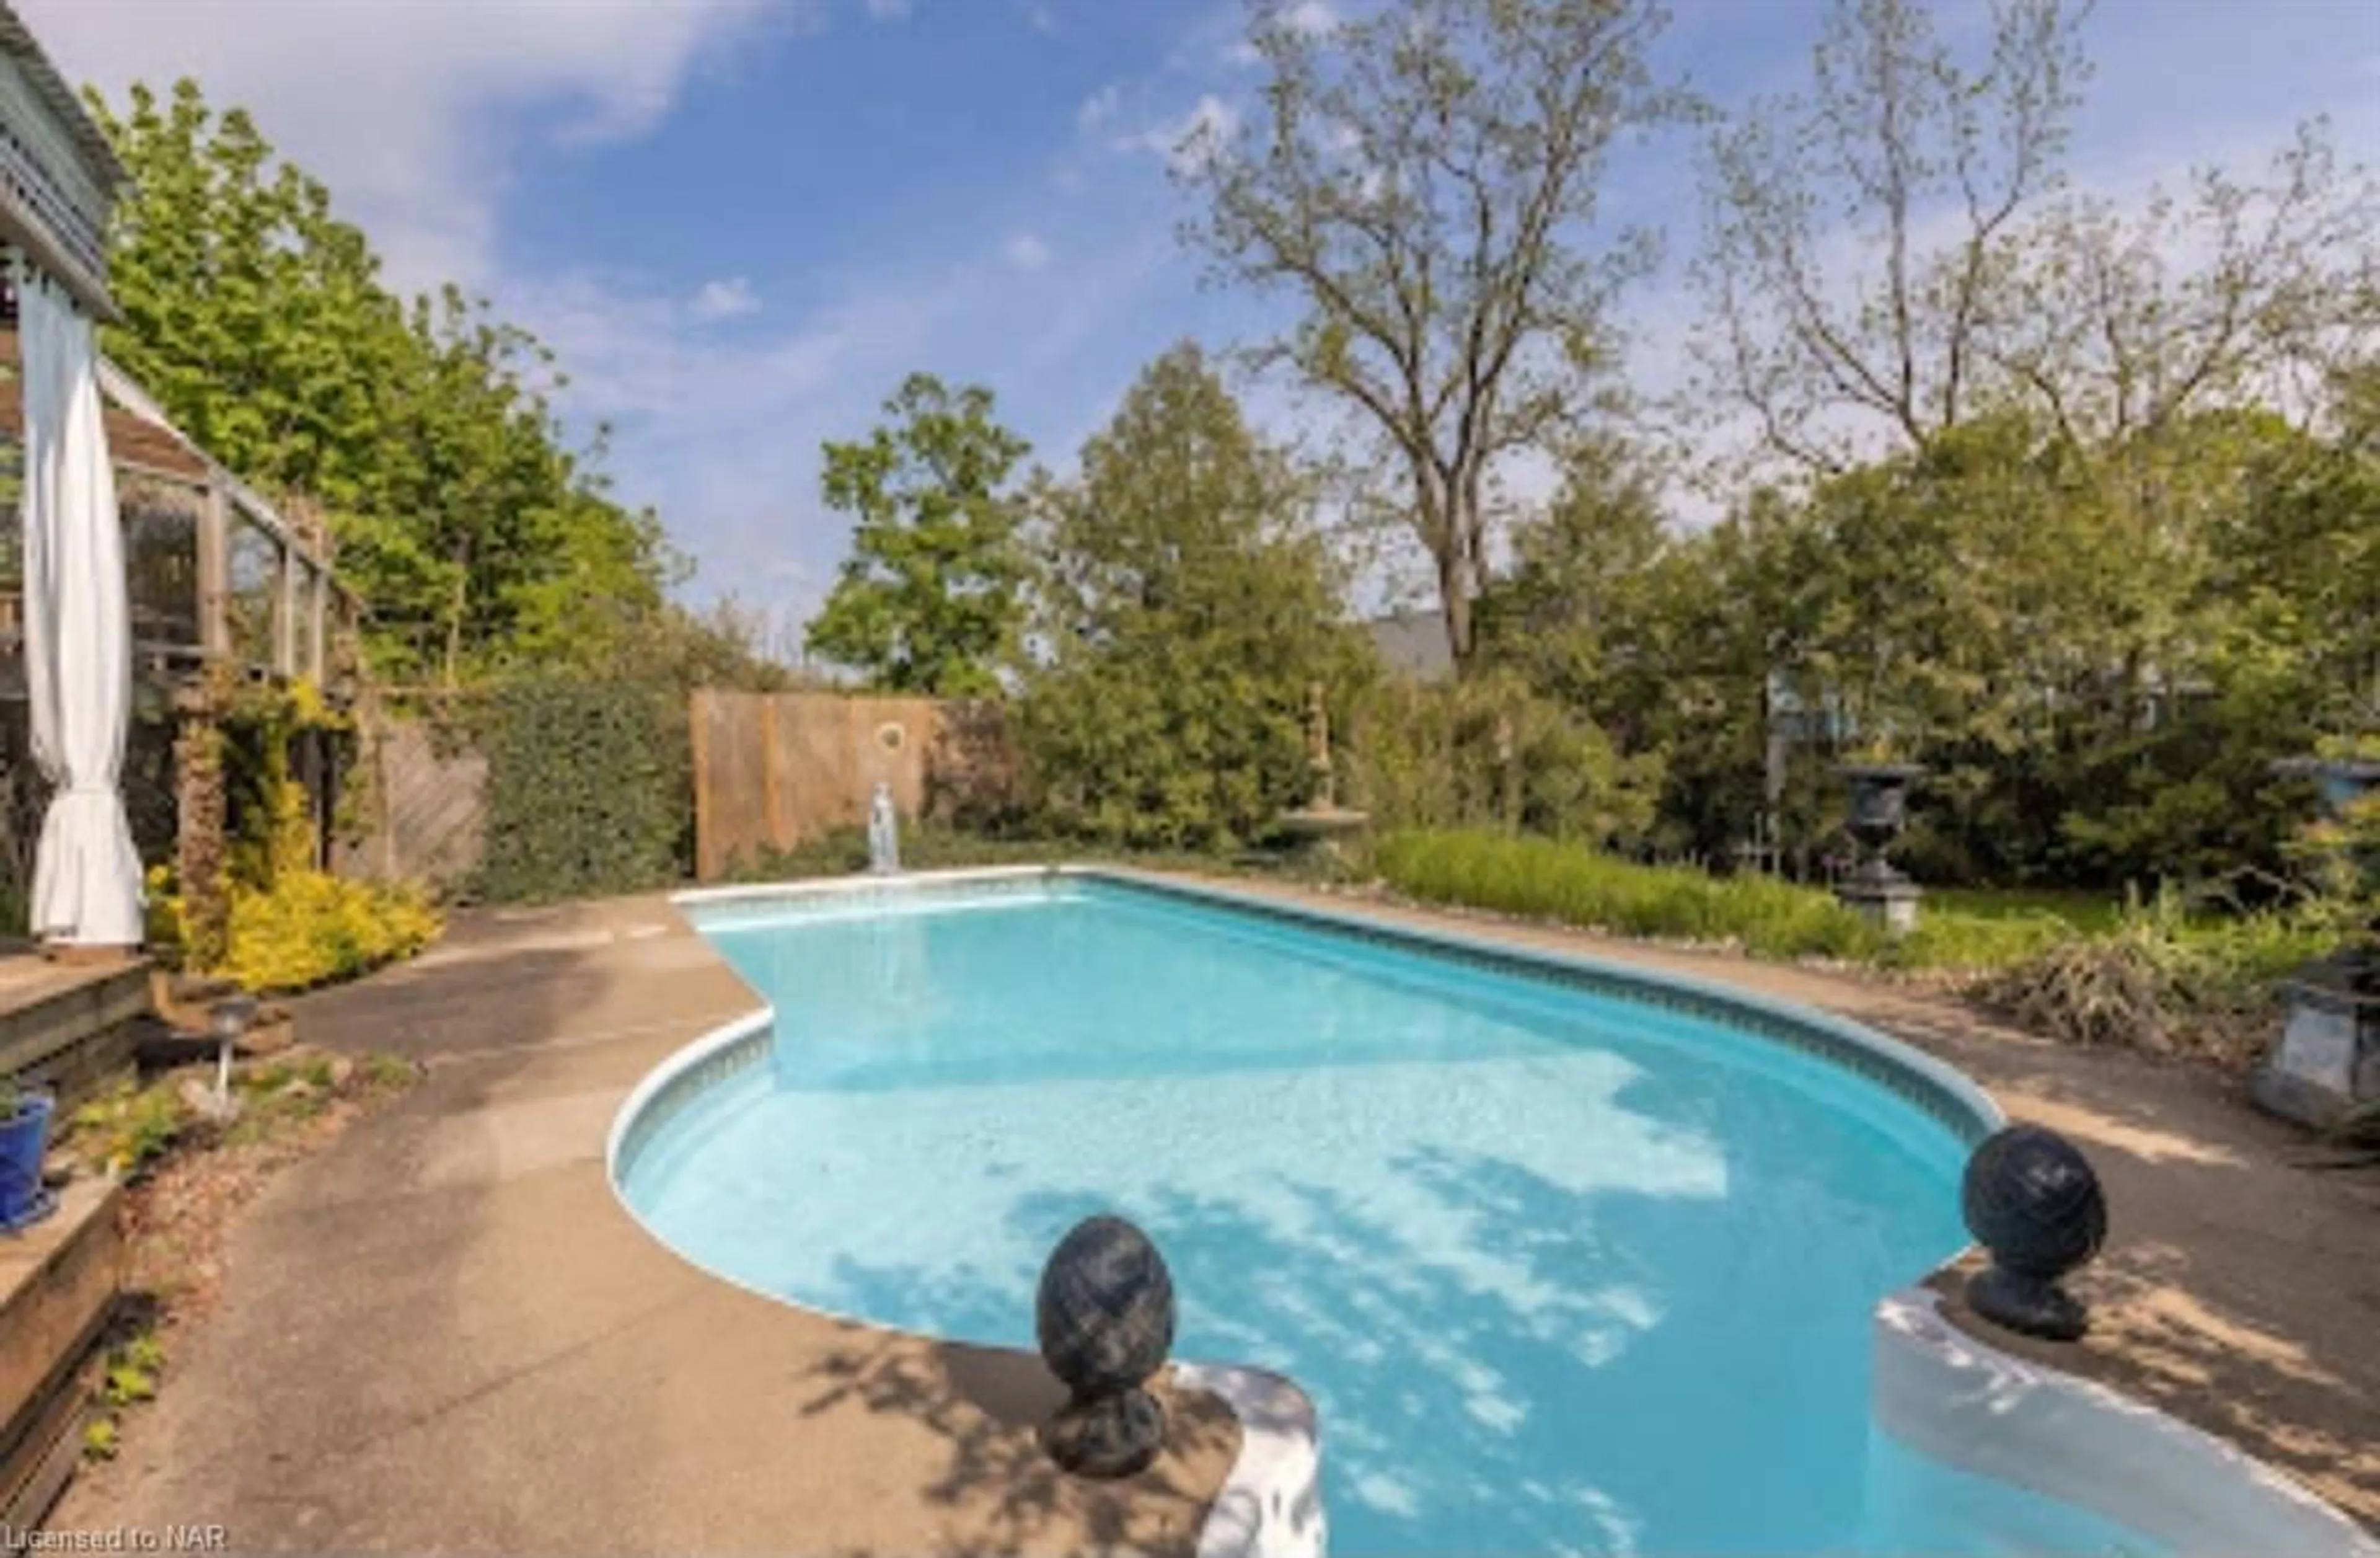 Indoor or outdoor pool for 3631 Cutler St, Ridgeway Ontario L0S 1N0